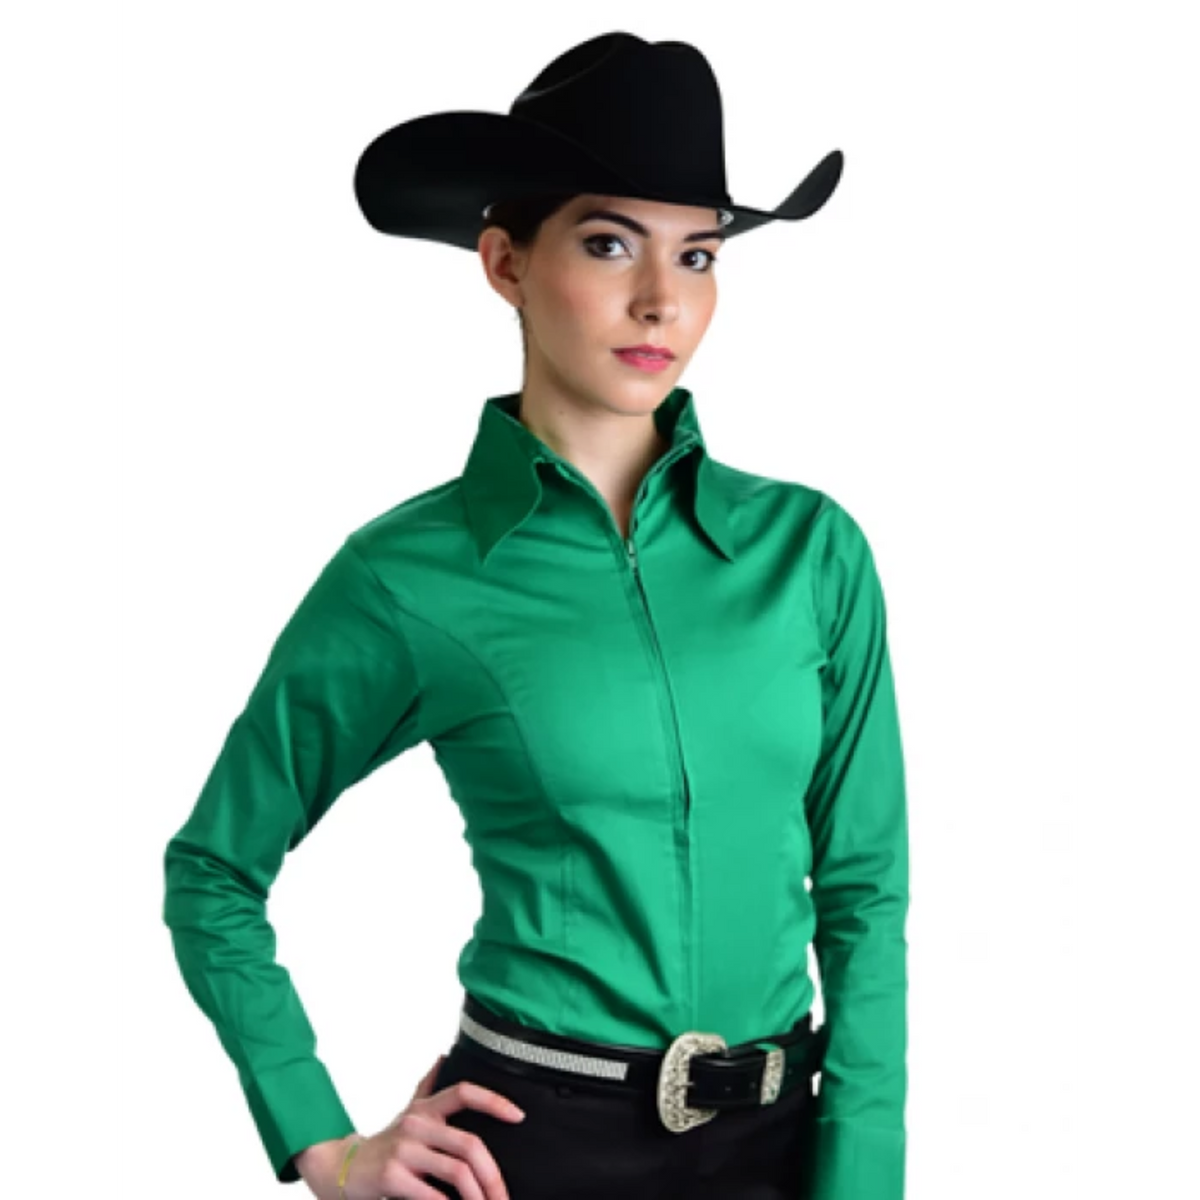 Emerald Green Zip up show shirt